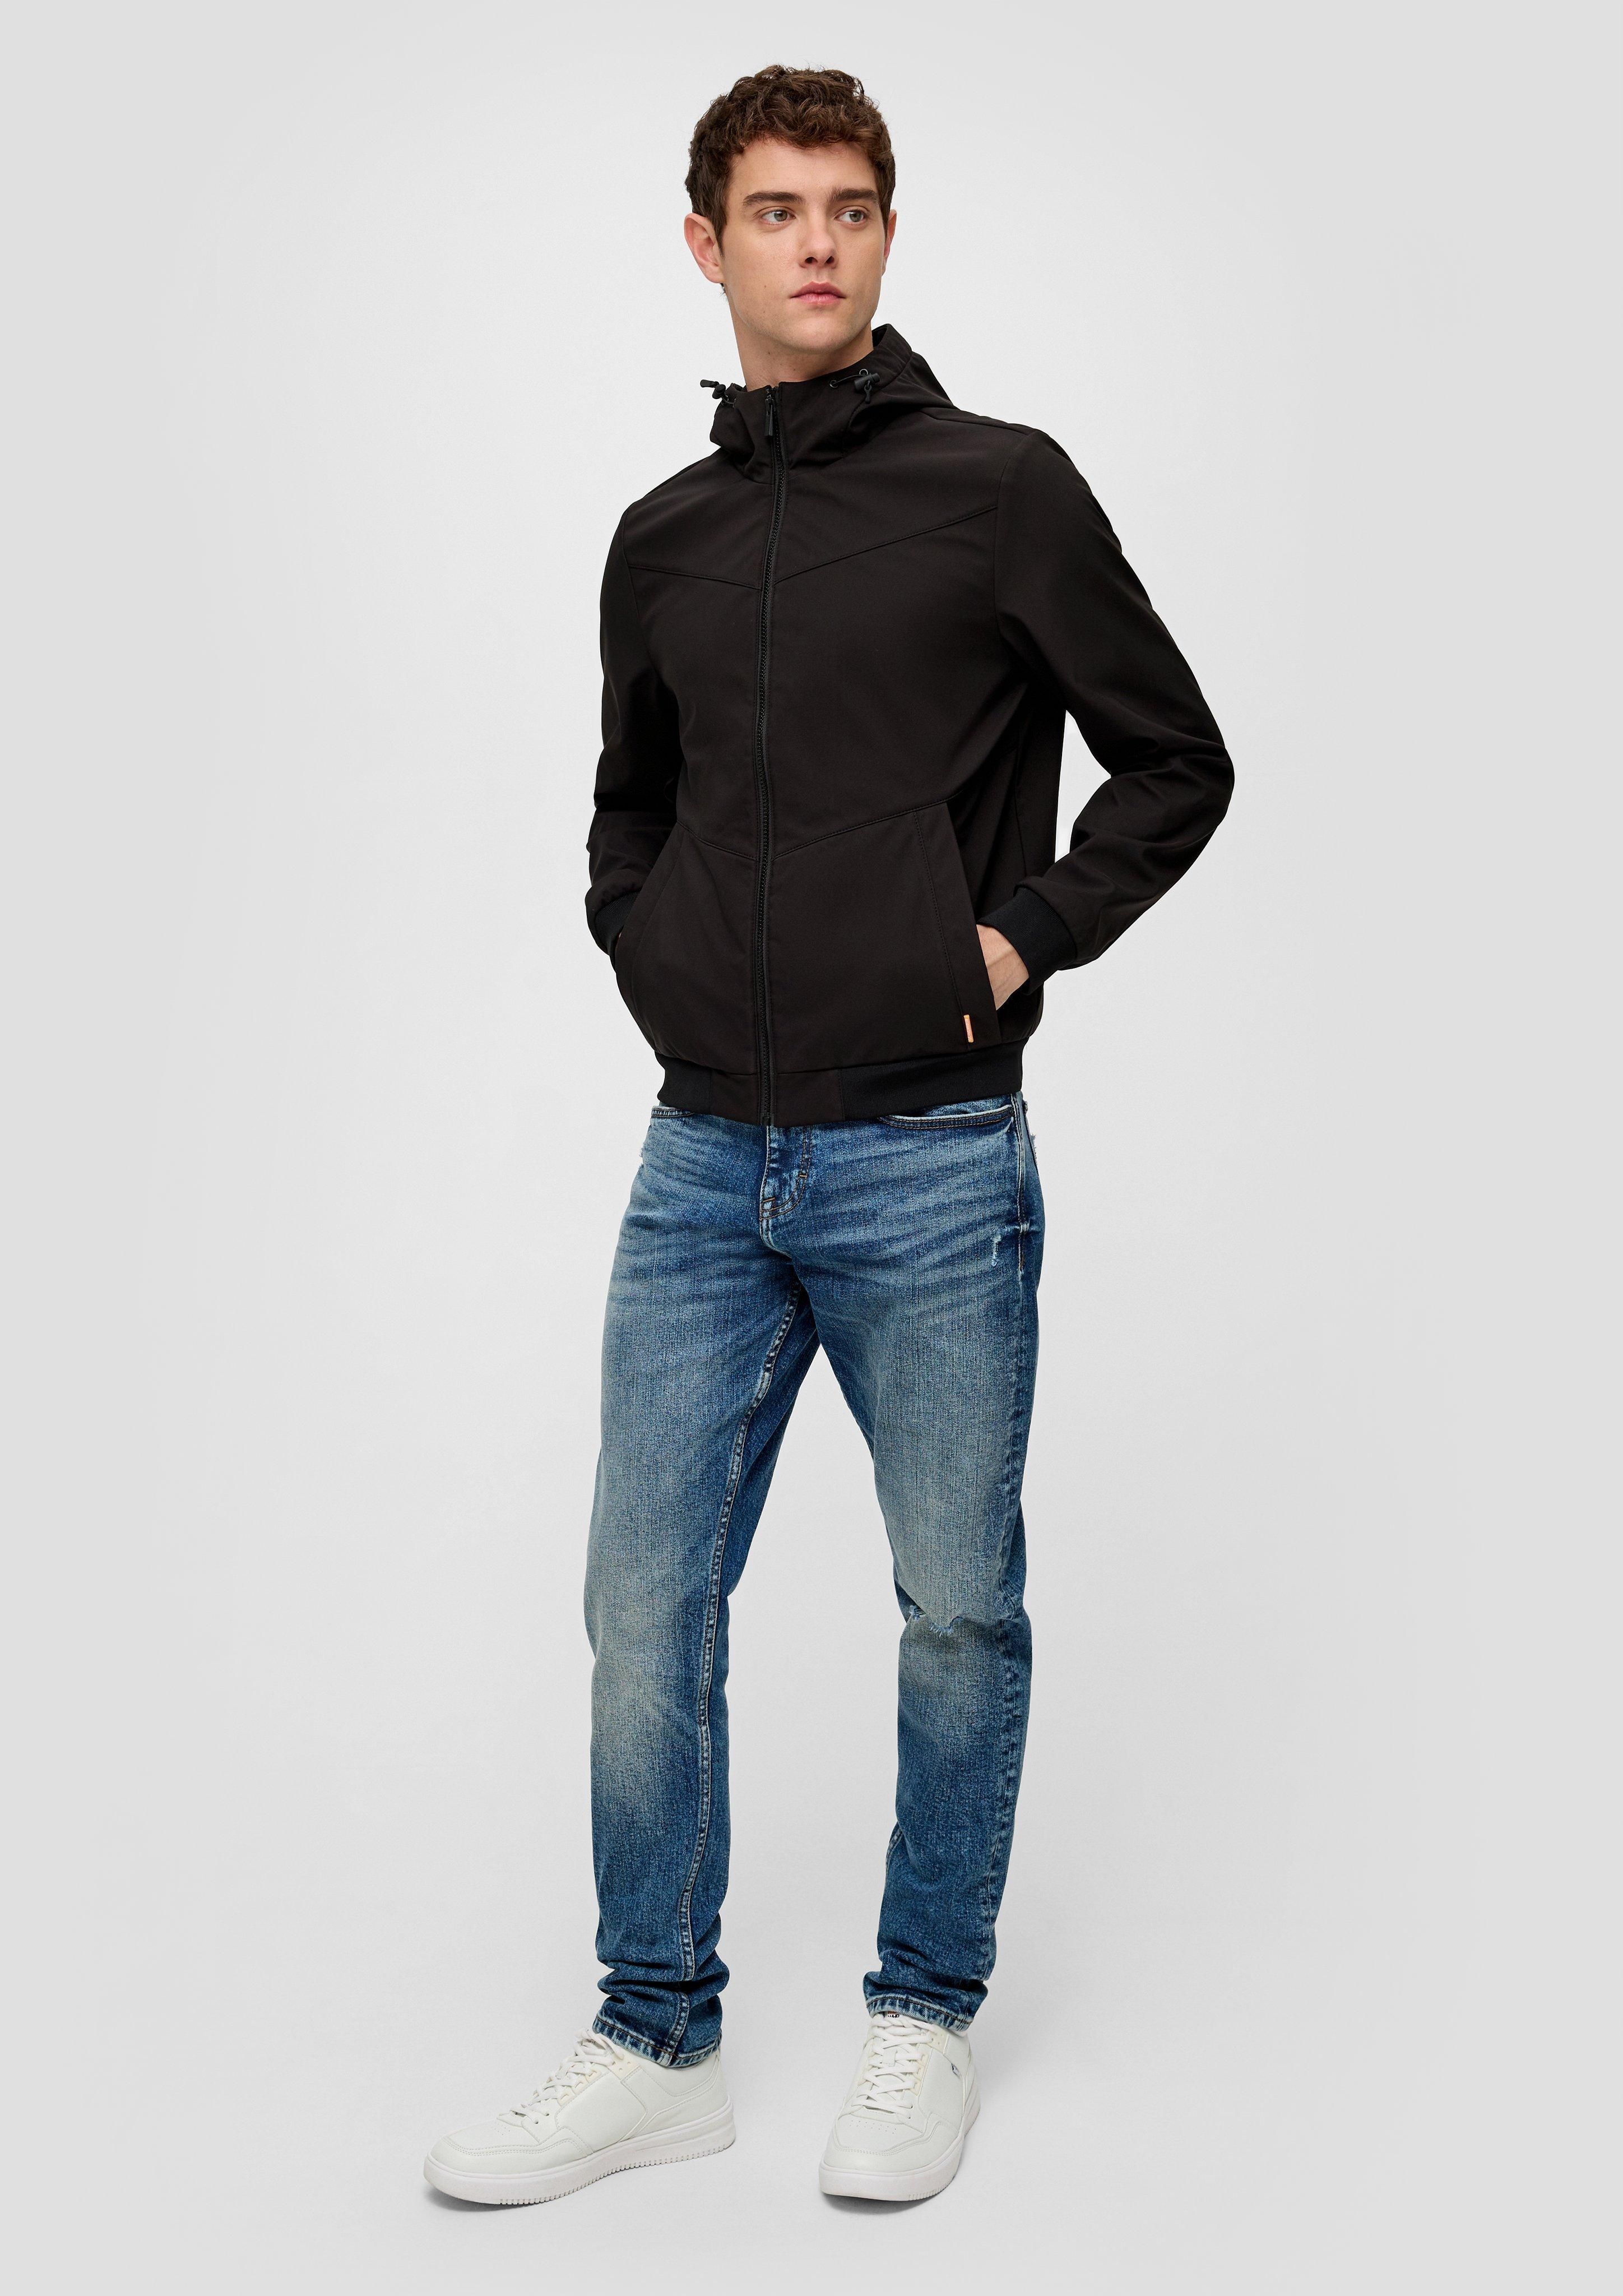 Куртка мужская QS by s.Oliver 2141622/9999 черная XL